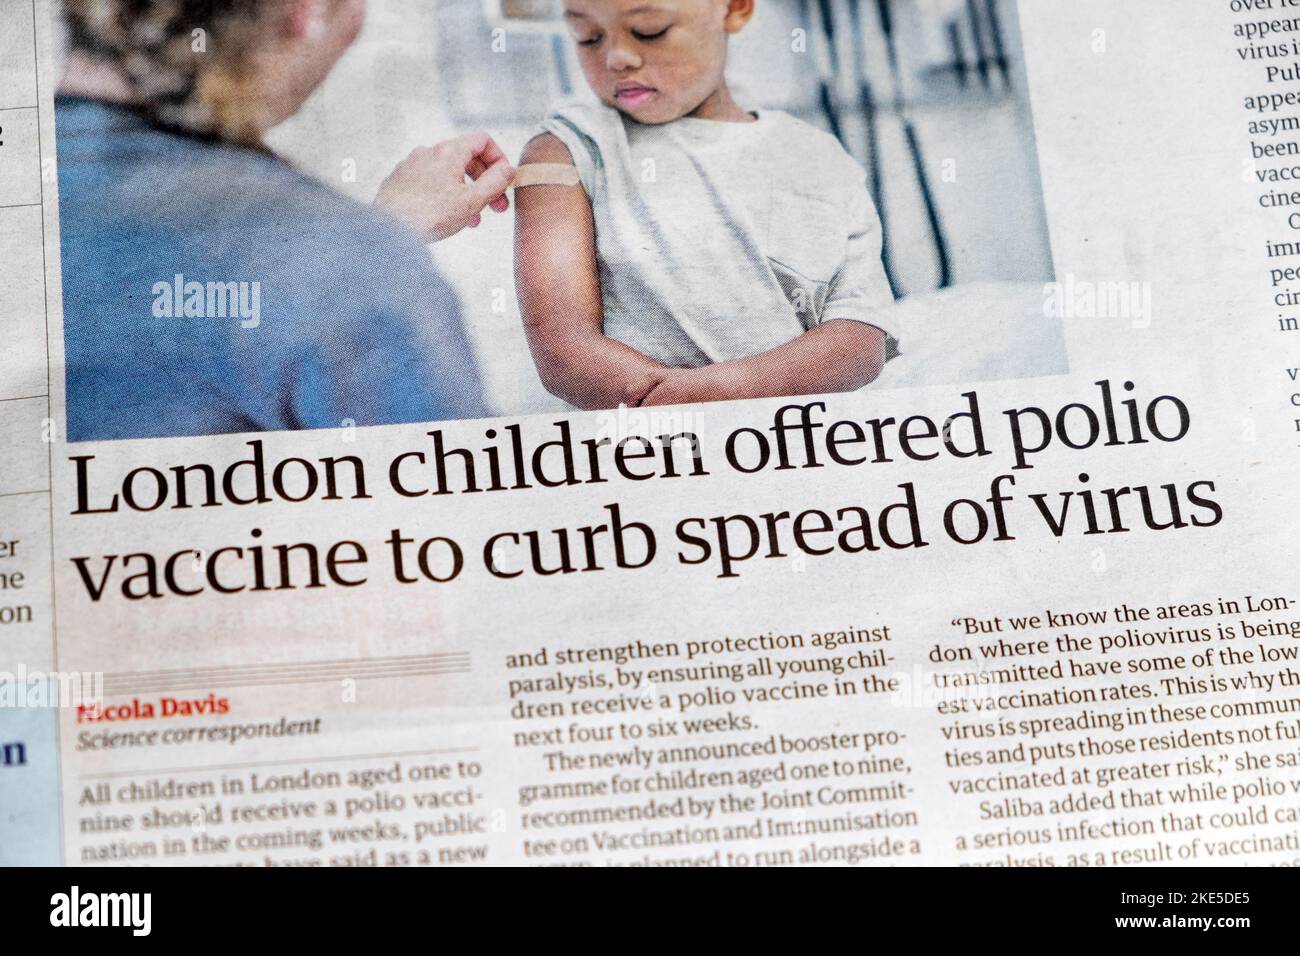 « Les enfants de Londres ont offert le vaccin contre la polio pour enrayer la propagation du virus » le journal Guardian titre de l'article sur la vaccination des enfants 11 août 2022 Grande-Bretagne Royaume-Uni Banque D'Images